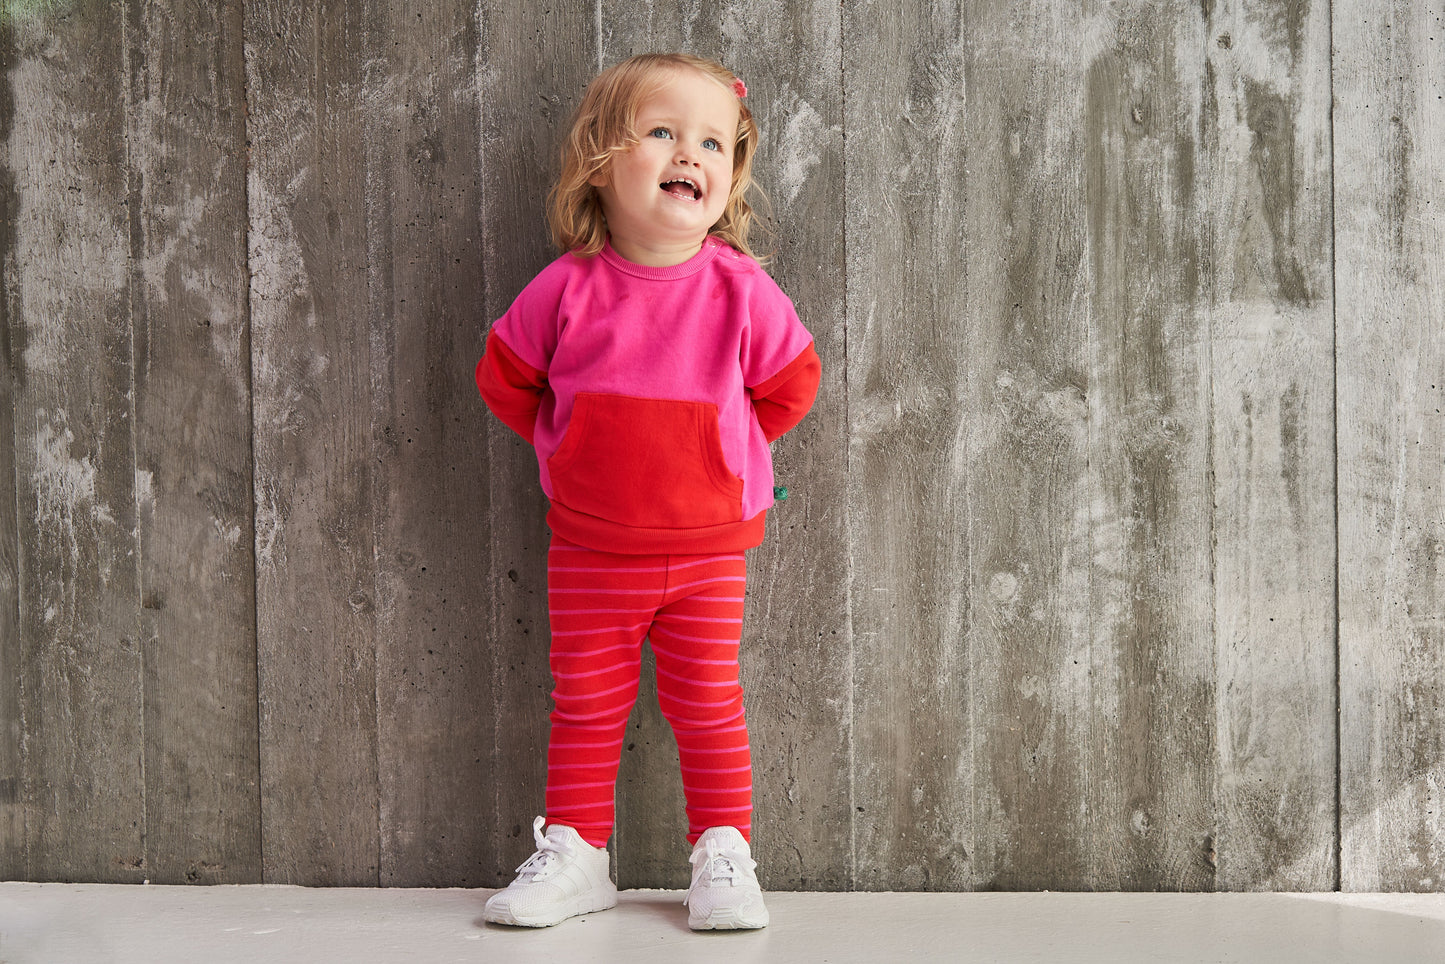 Block Color Toddler Sweatshirt